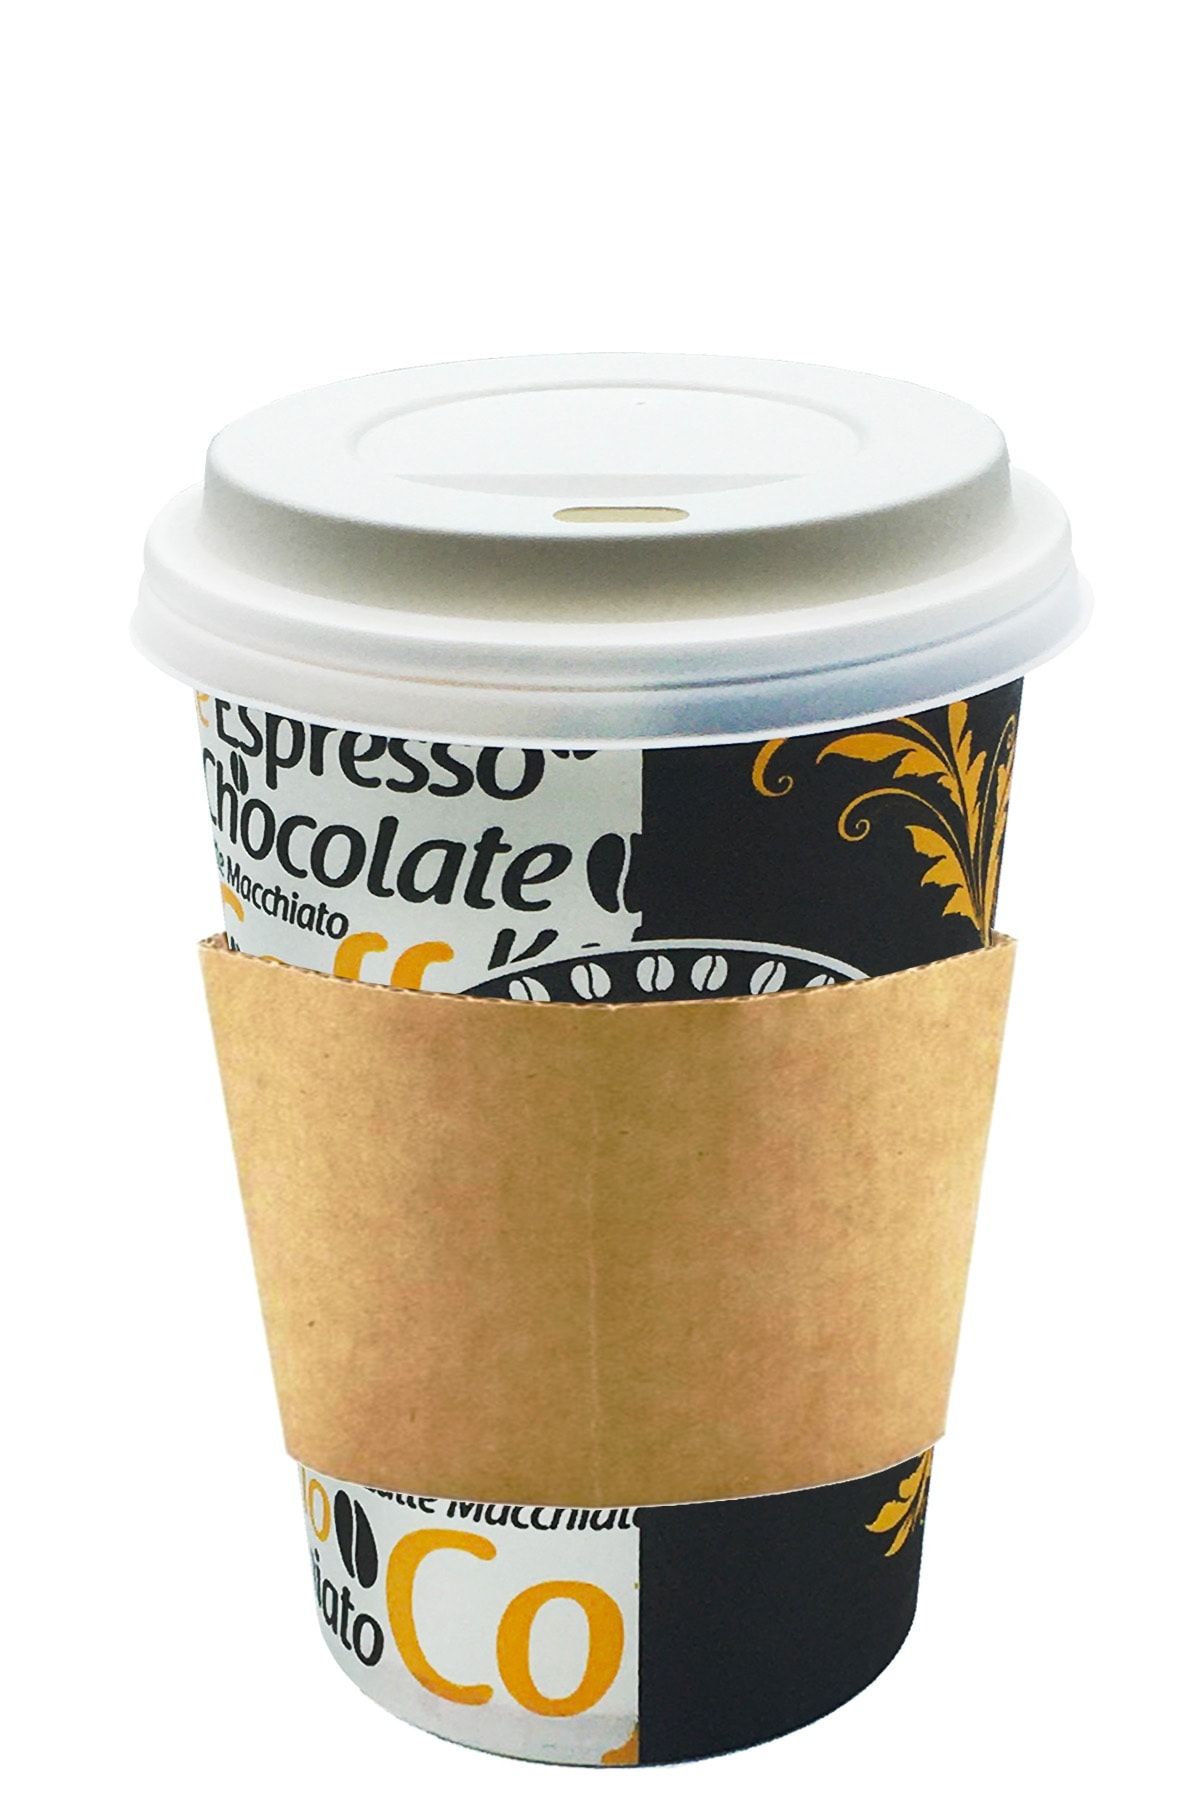 Afra Tedarik 12 Oz Beyaz Kapaklı Tutamaçlı Karton Bardak Latte Kahve Kağıt Bardak Sleeve 300 Ml - 100'lü